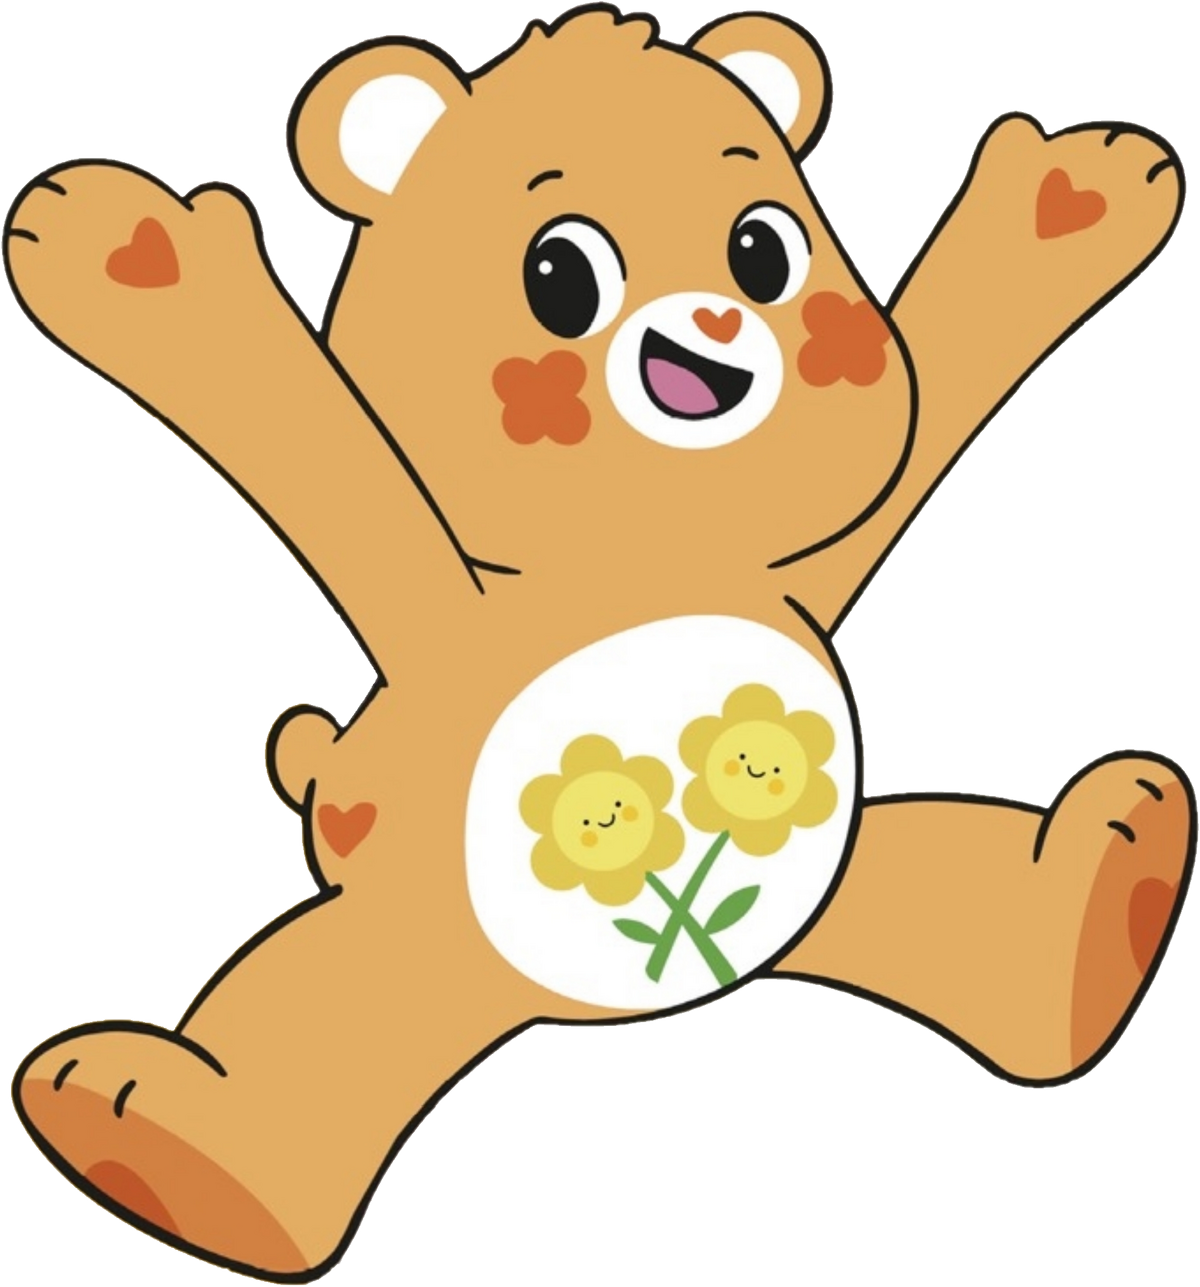 Friend bear care bear wiki